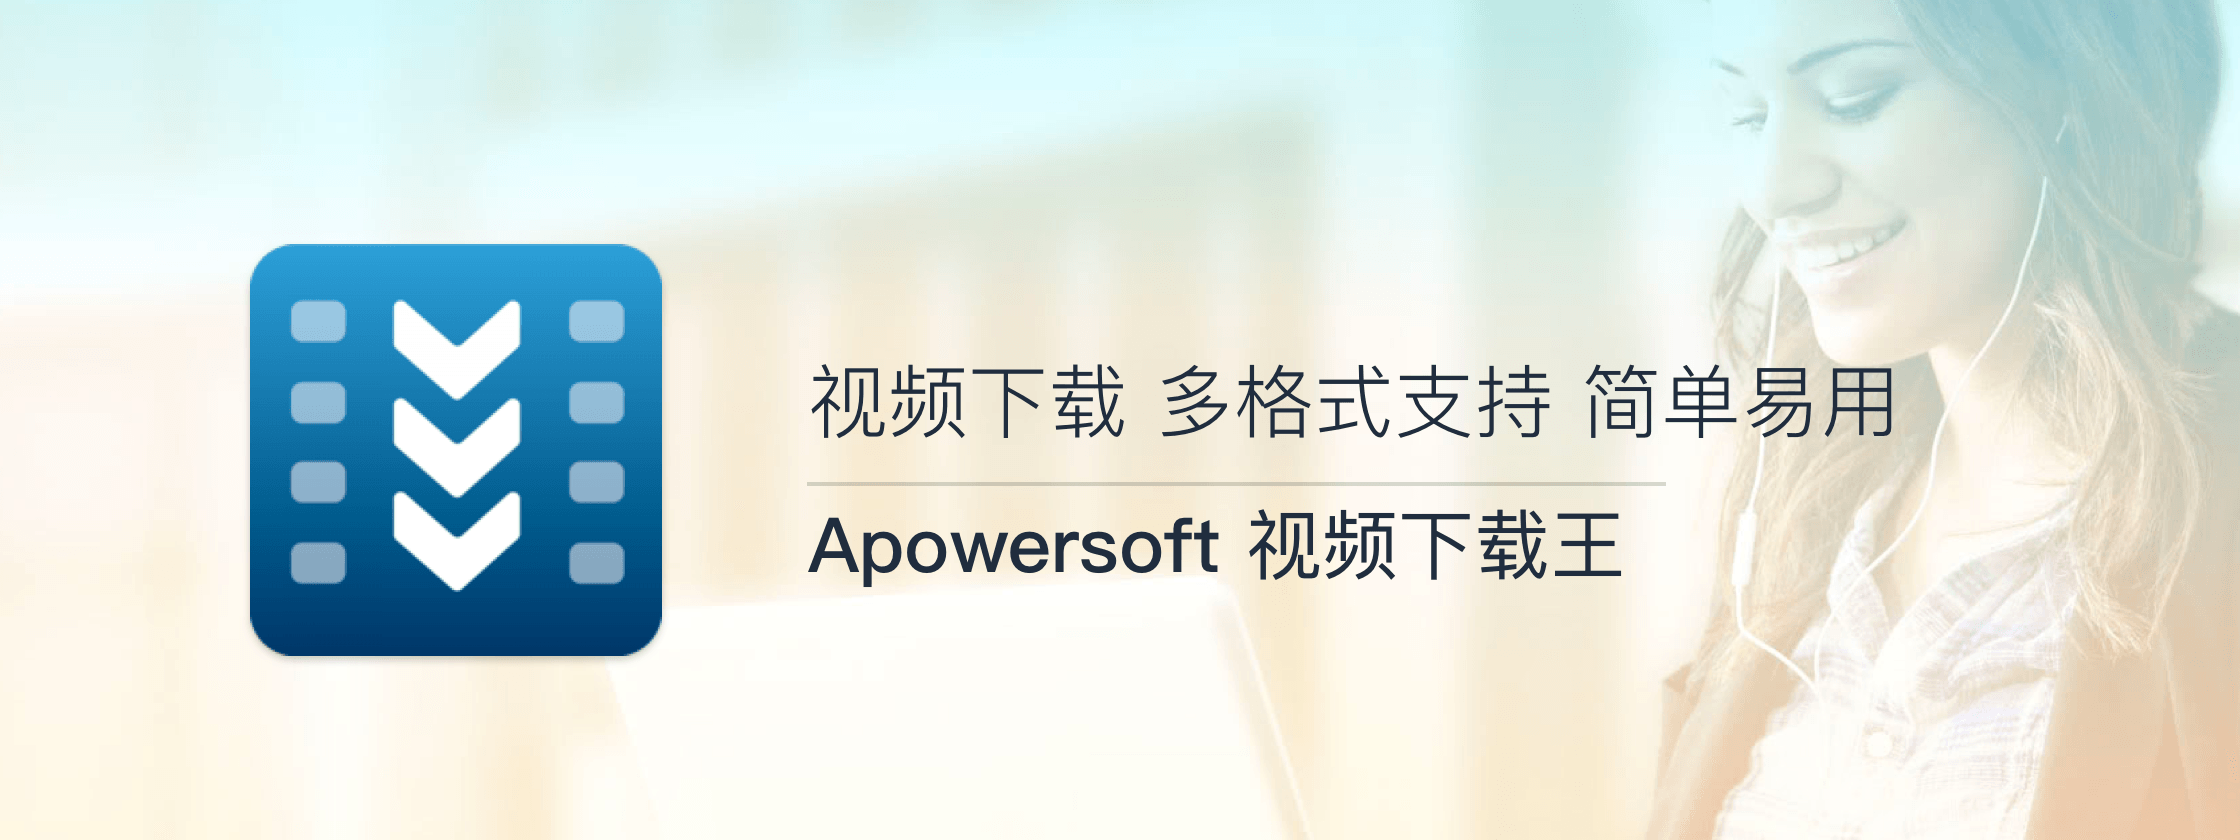 Apower 视频下载王，简单易用、功能强大的视频下载工具